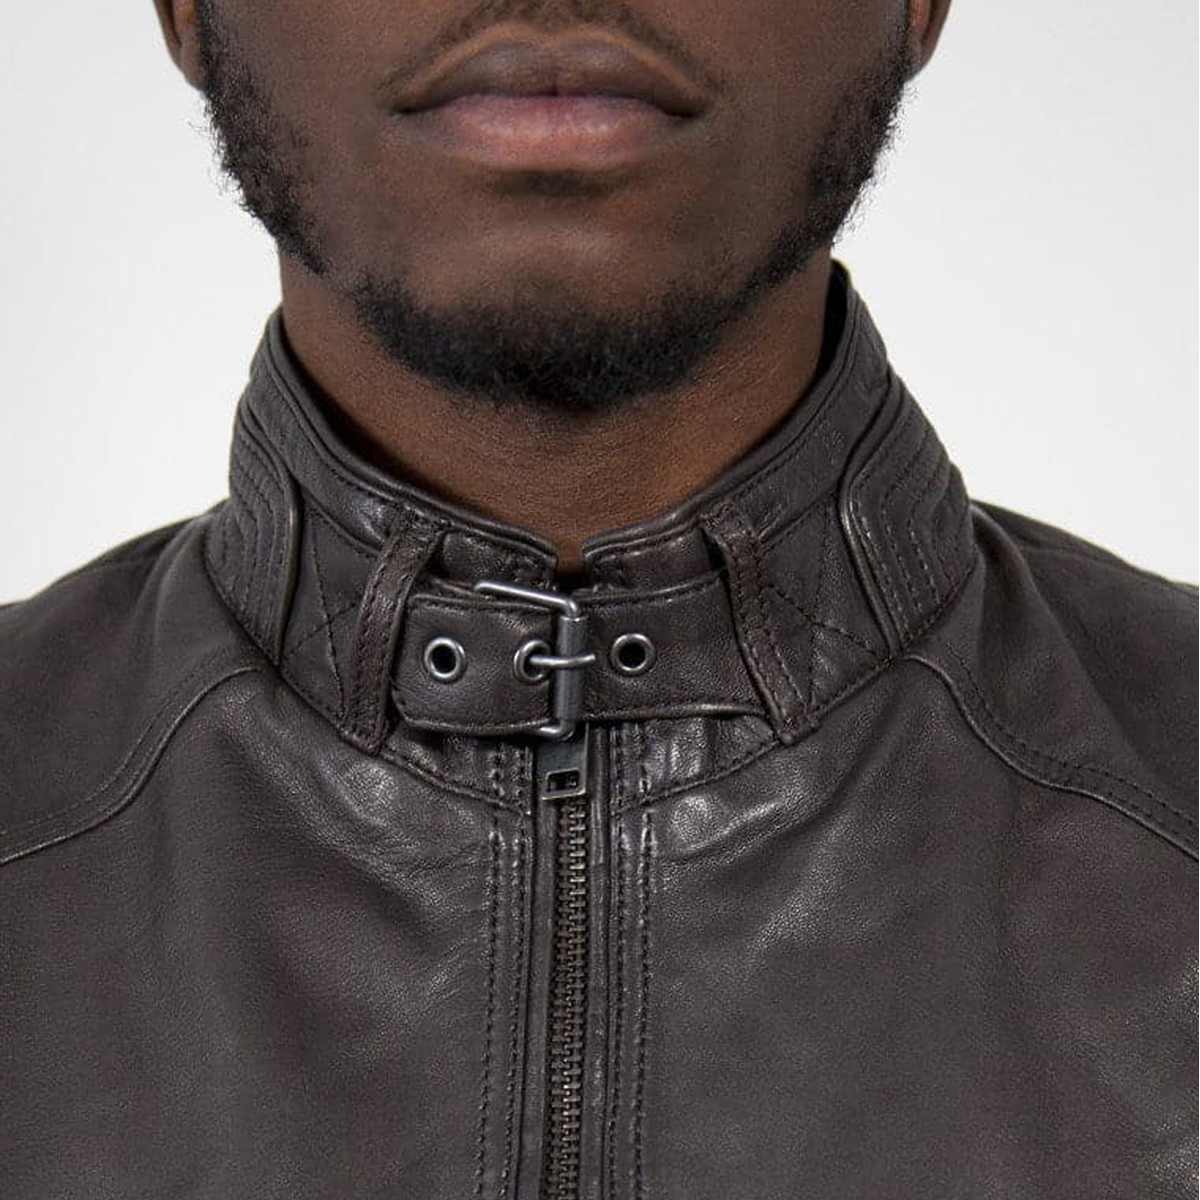 Robbie Leather Jacket - Brown